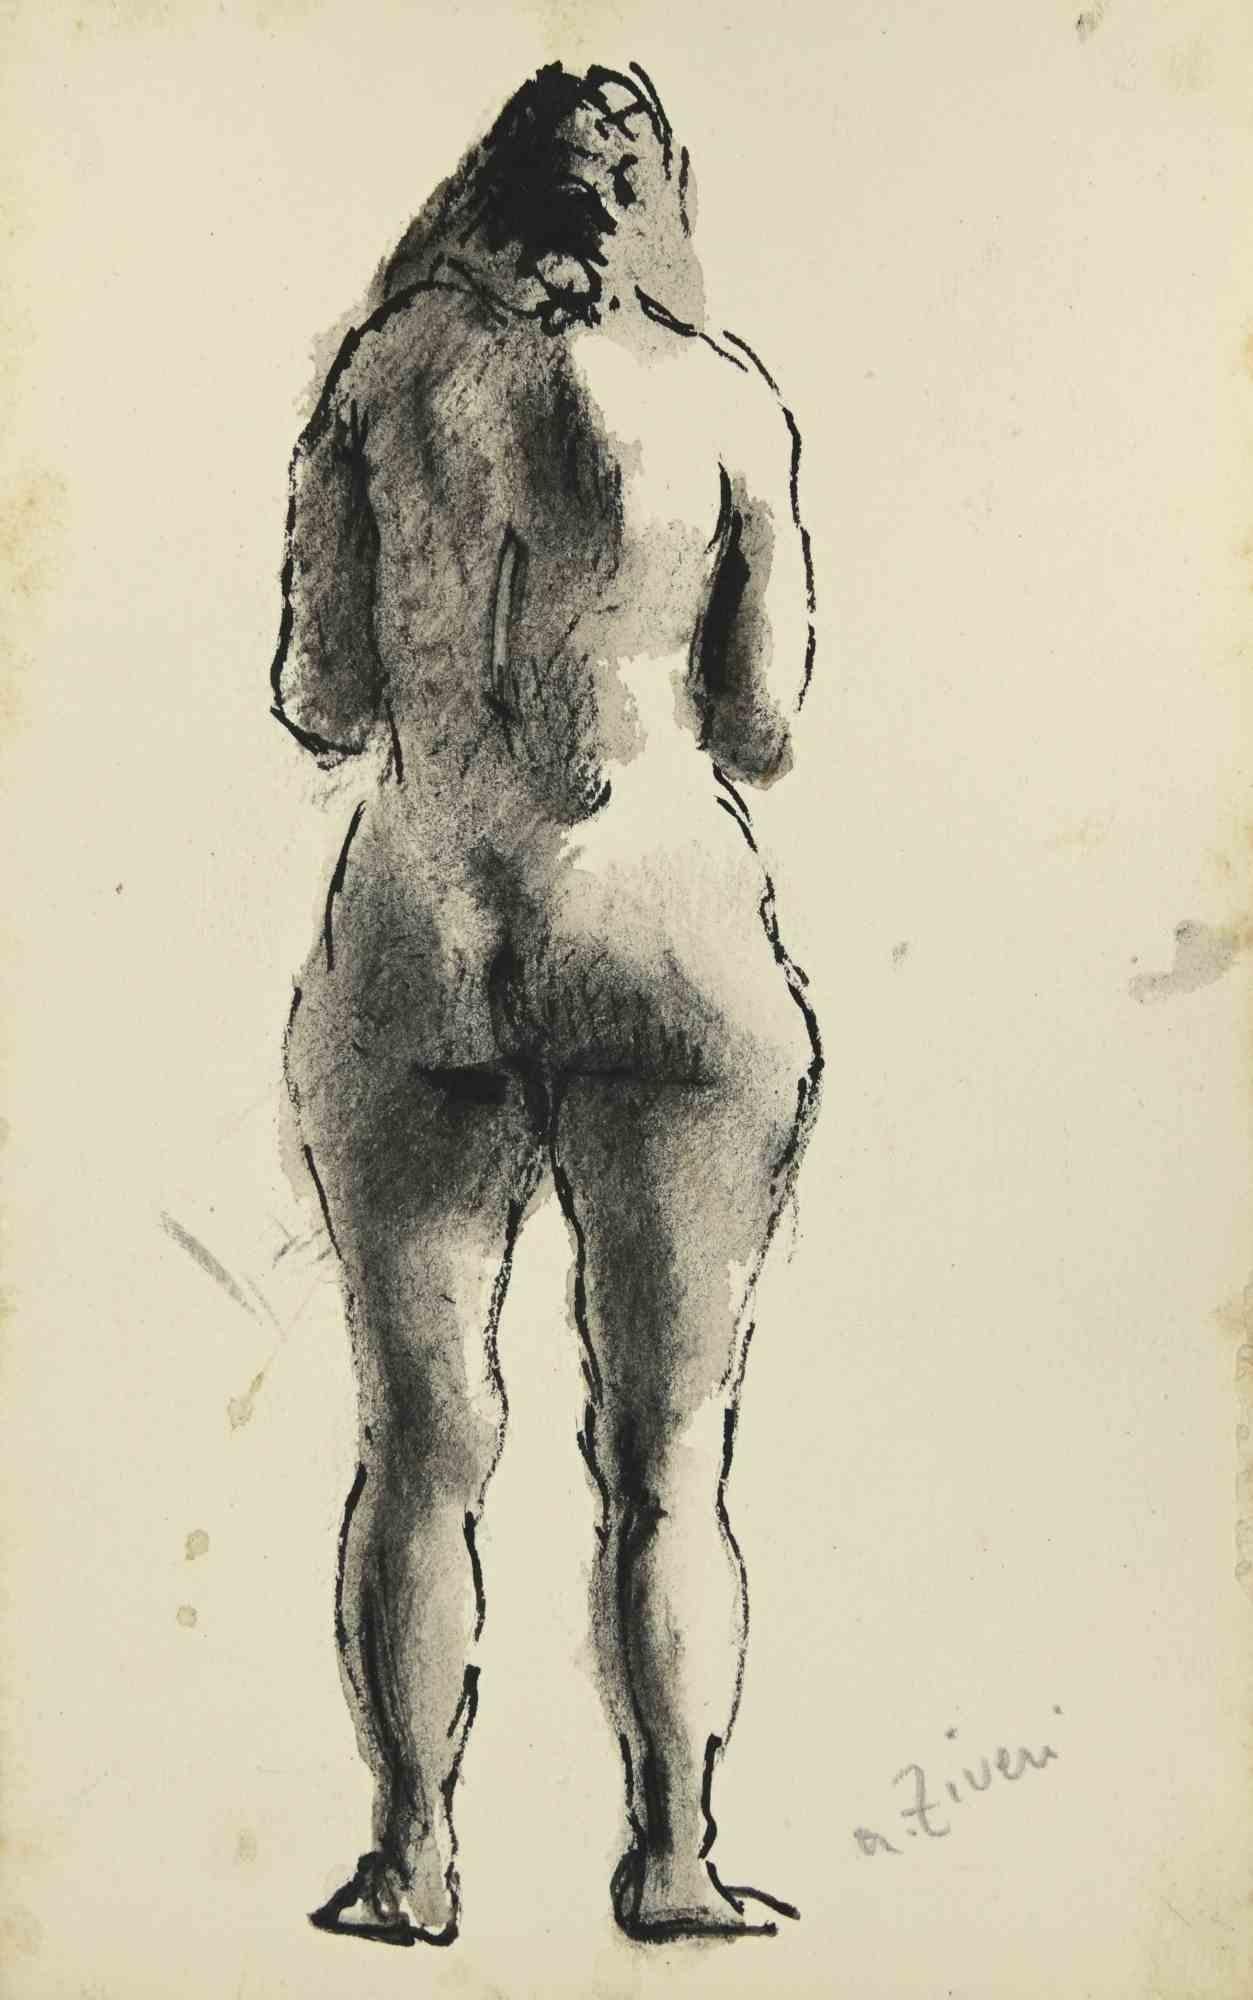 Der Akt ist eine Zeichnung von Alberto Ziveri aus den 1930er Jahren.

Tusche und Aquarell auf Papier.

Handsigniert.

In gutem Zustand mit leichten Stockflecken.

Das Kunstwerk wird durch geschickte Striche meisterhaft dargestellt.

Alberto Ziveri